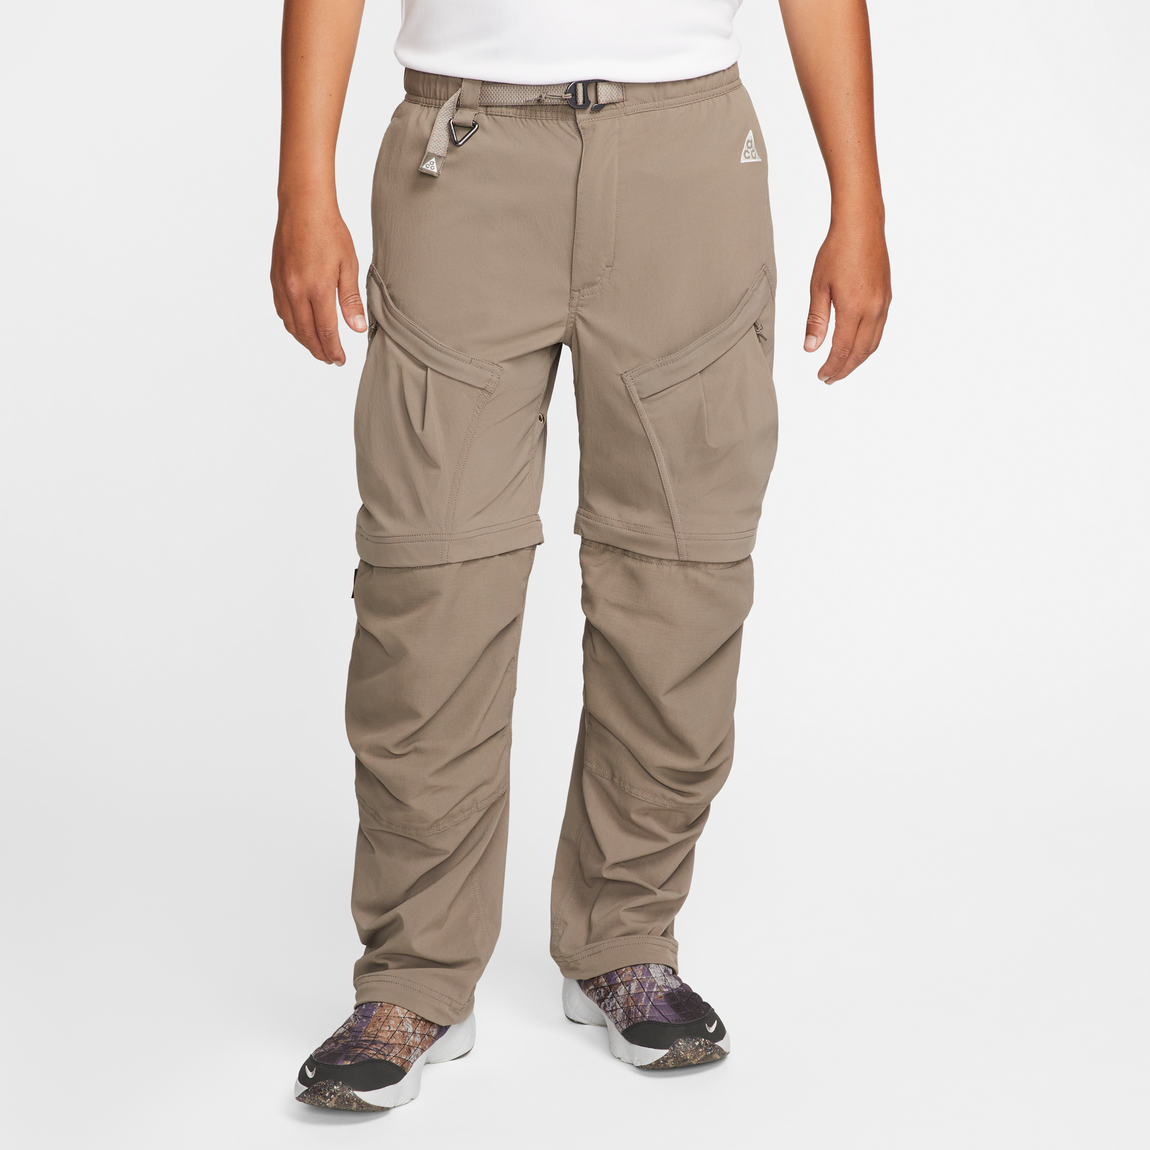 Nike ACG Summit Cargo Pants (Olive Grey/Summit White) - Nike ACG Summit Cargo Pants (Olive Grey/Summit White) - 